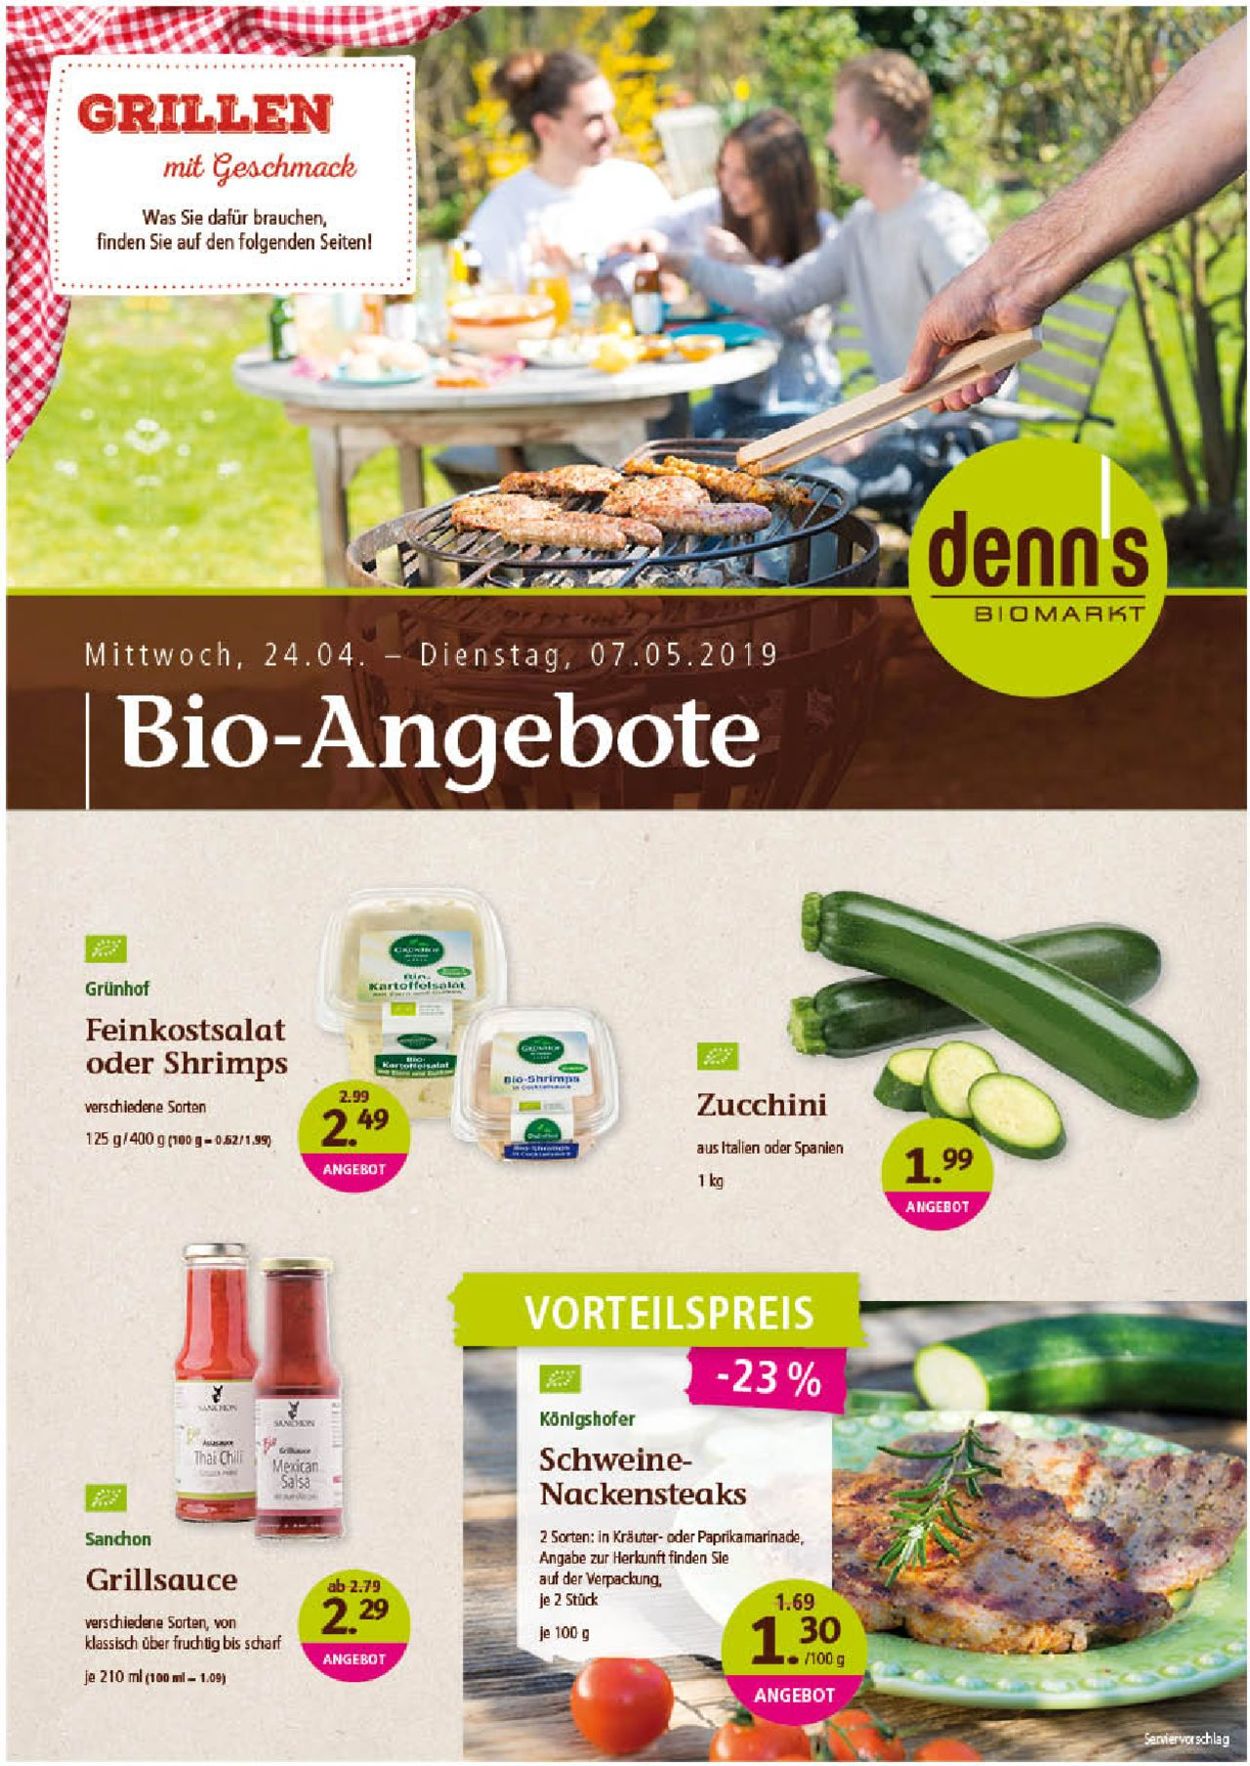 Denn's Biomarkt Prospekt - Aktuell vom 24.04-07.05.2019